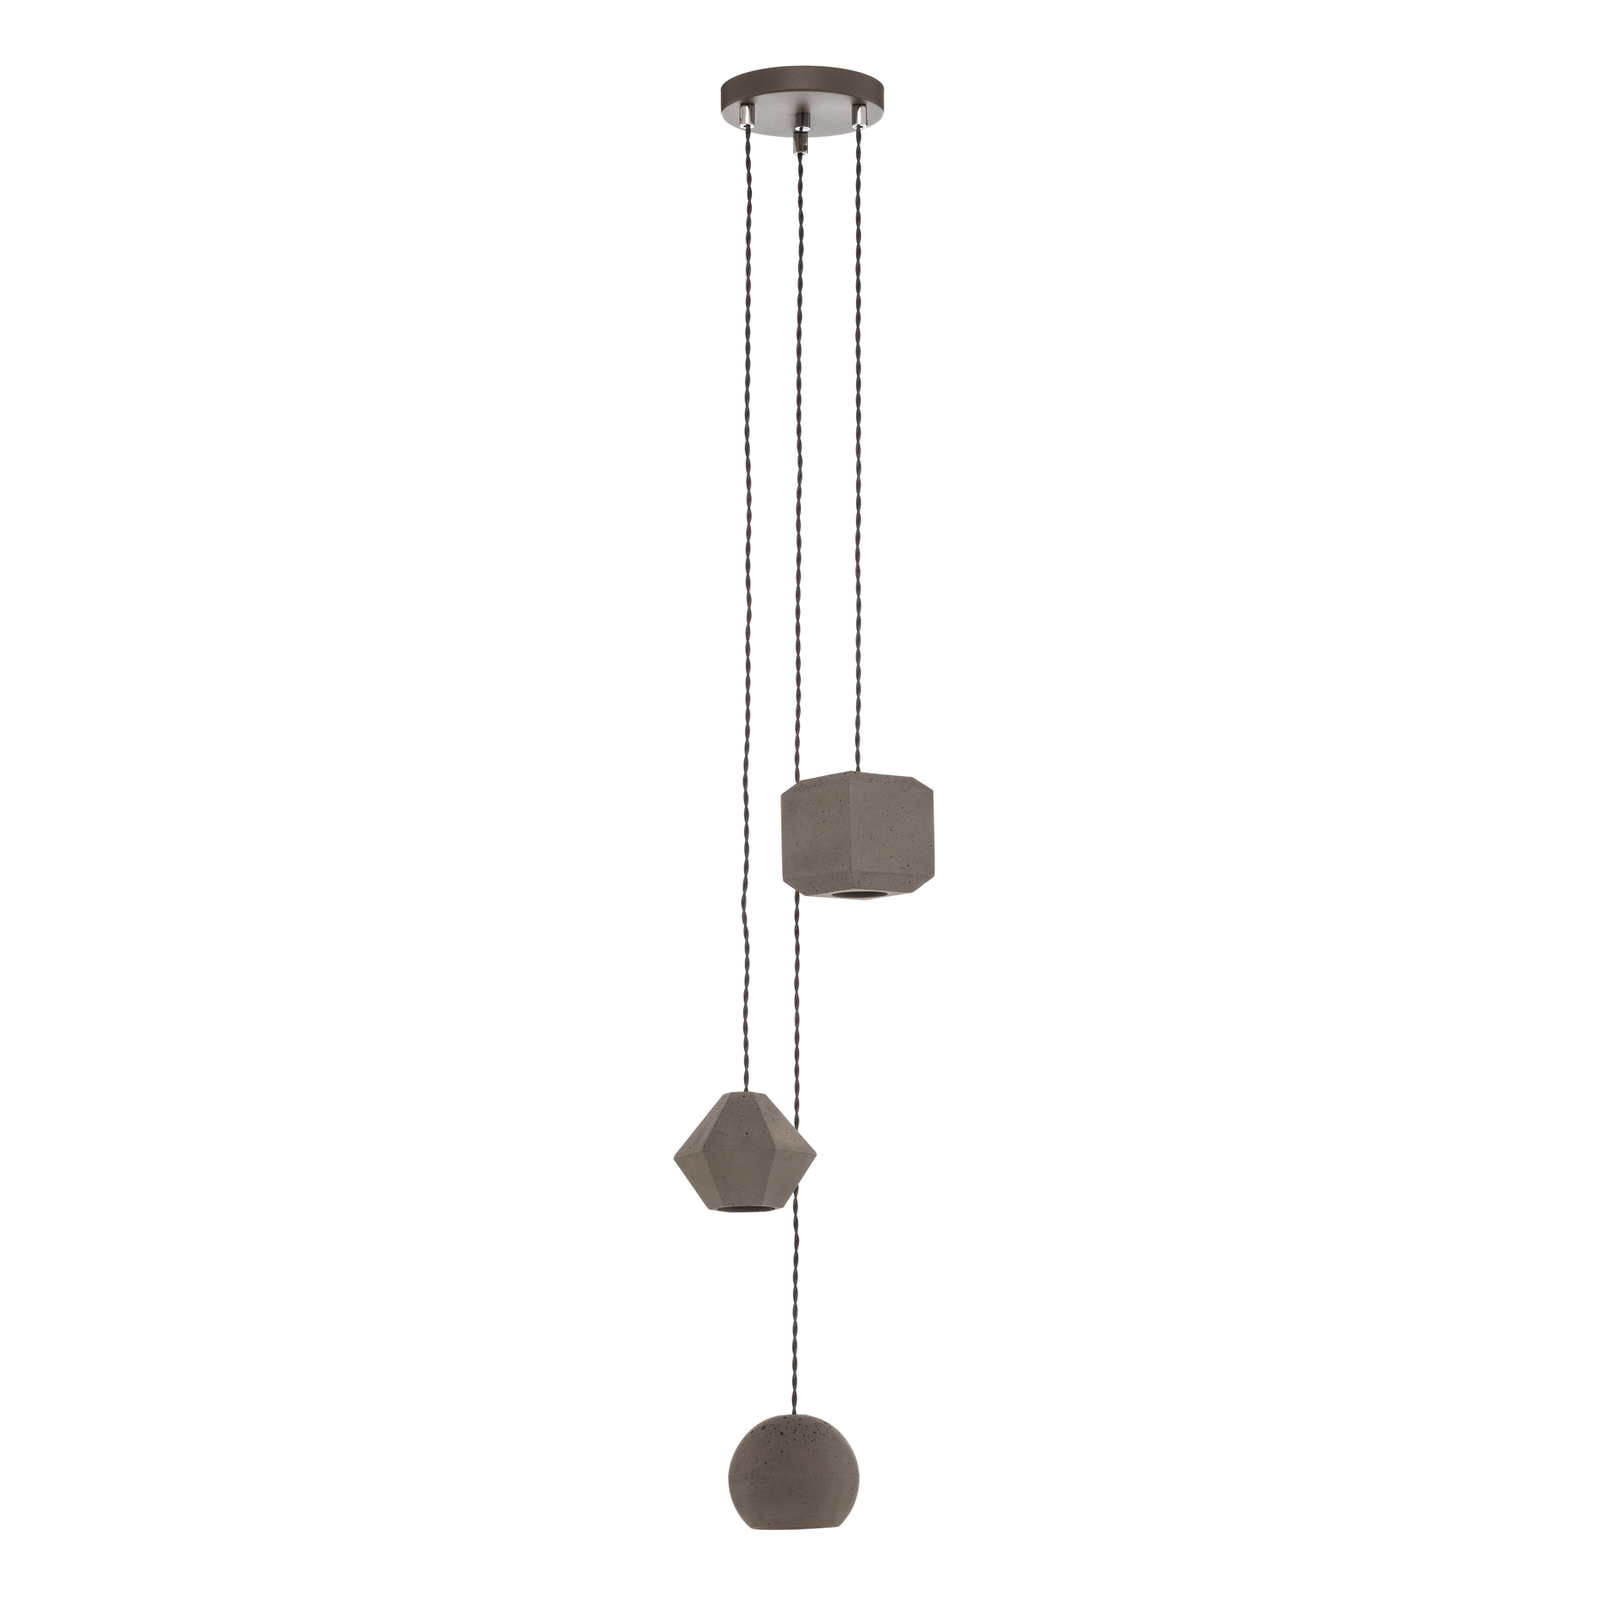 Hanglamp Geometric III van beton, 3-lamps